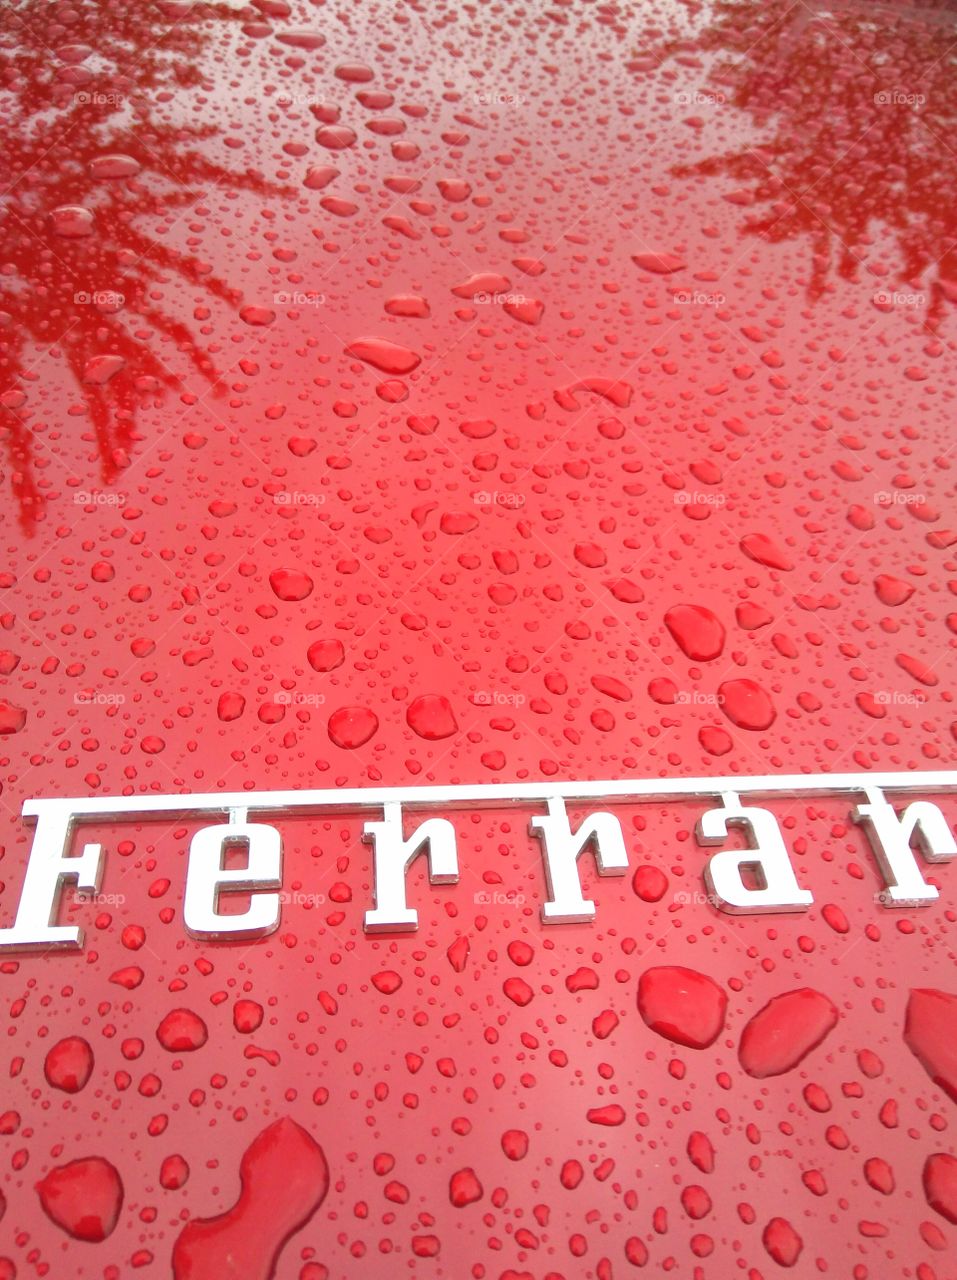 Ferrari in the rain
Ferrari im Regen